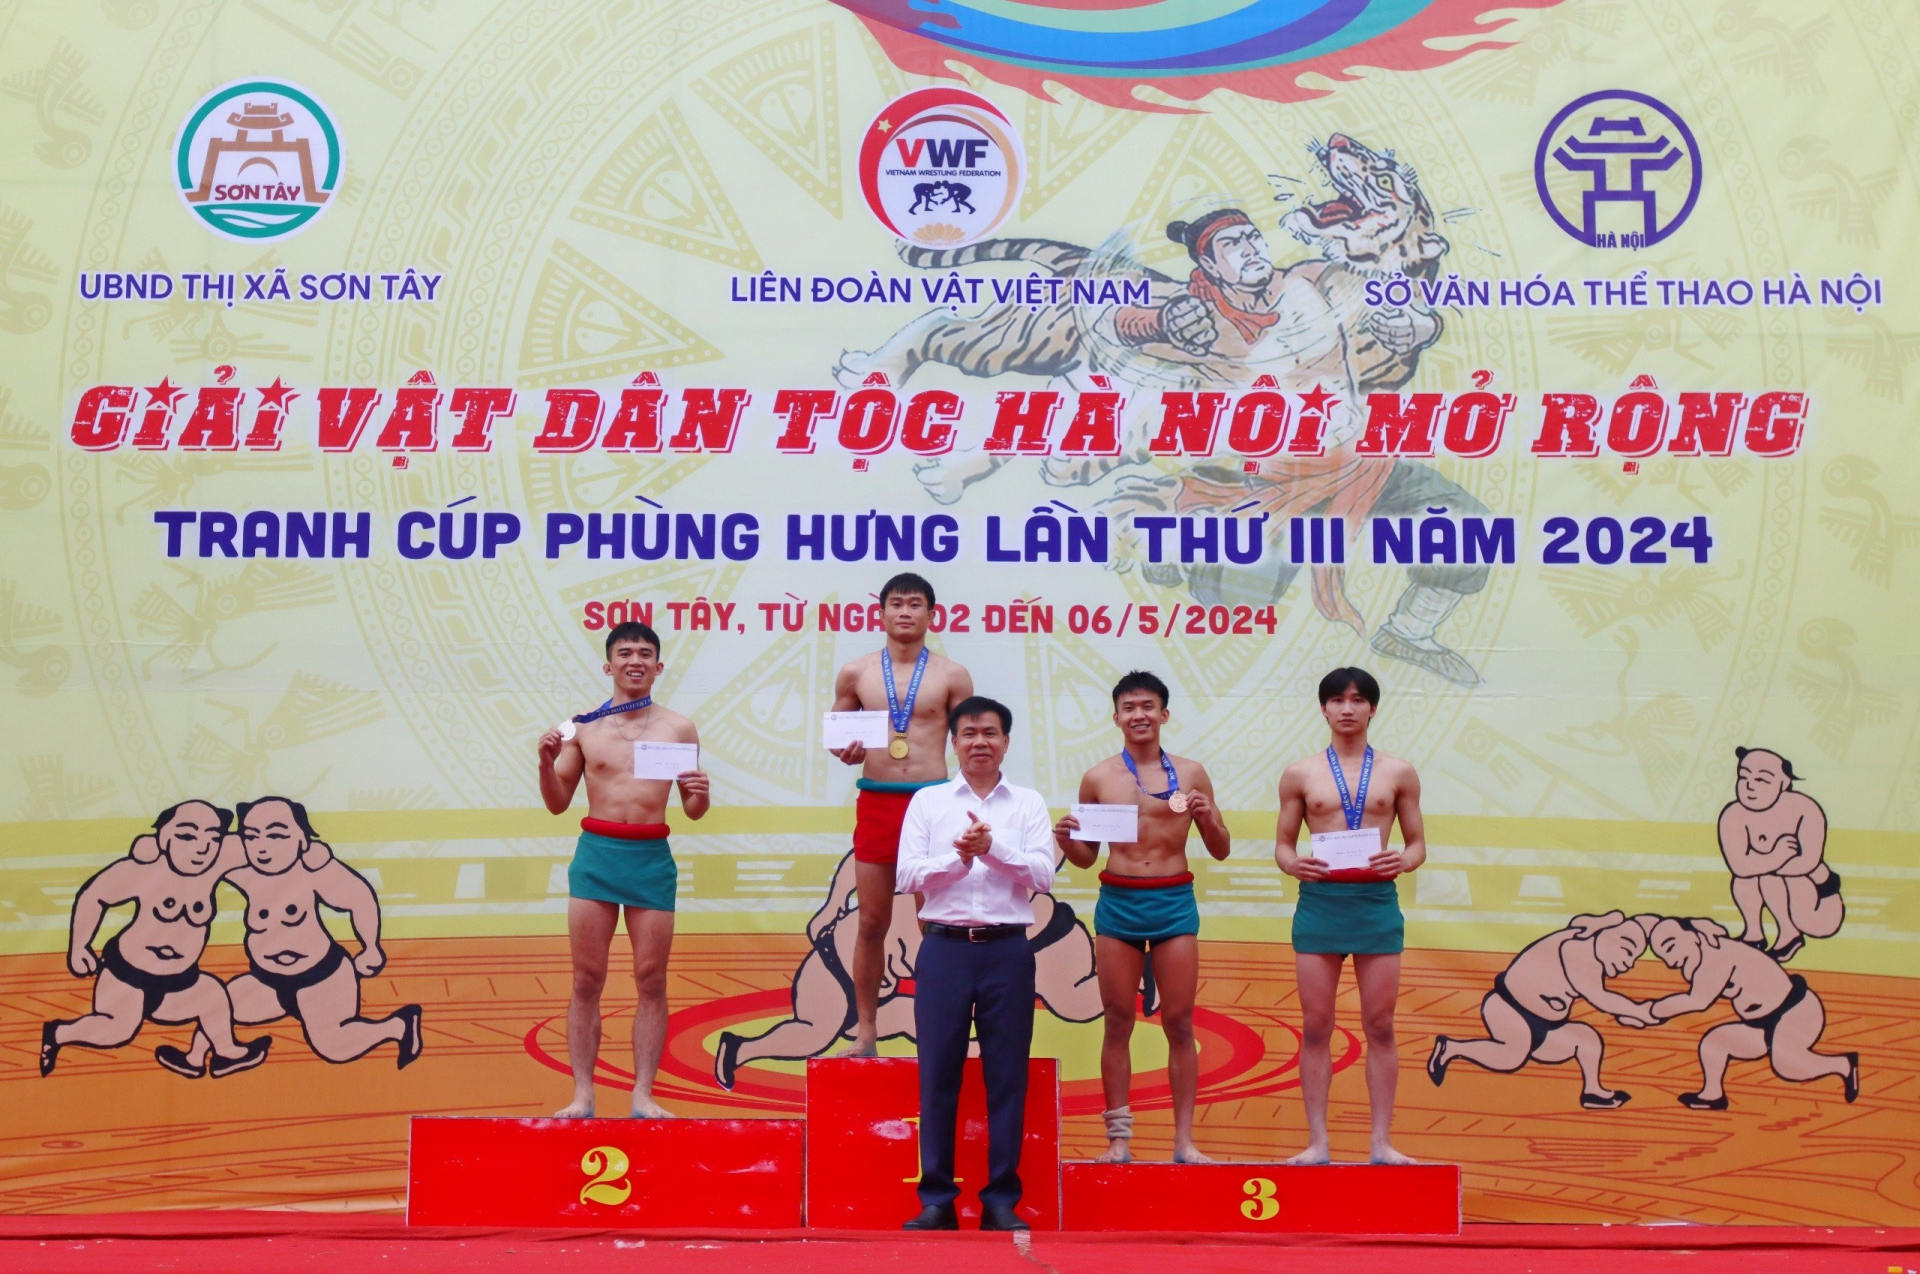 Đoàn Hà Nội giành cúp vô địch Giải vật dân tộc Hà Nội mở rộng tranh cúp Phùng Hưng lần thứ III năm 2024